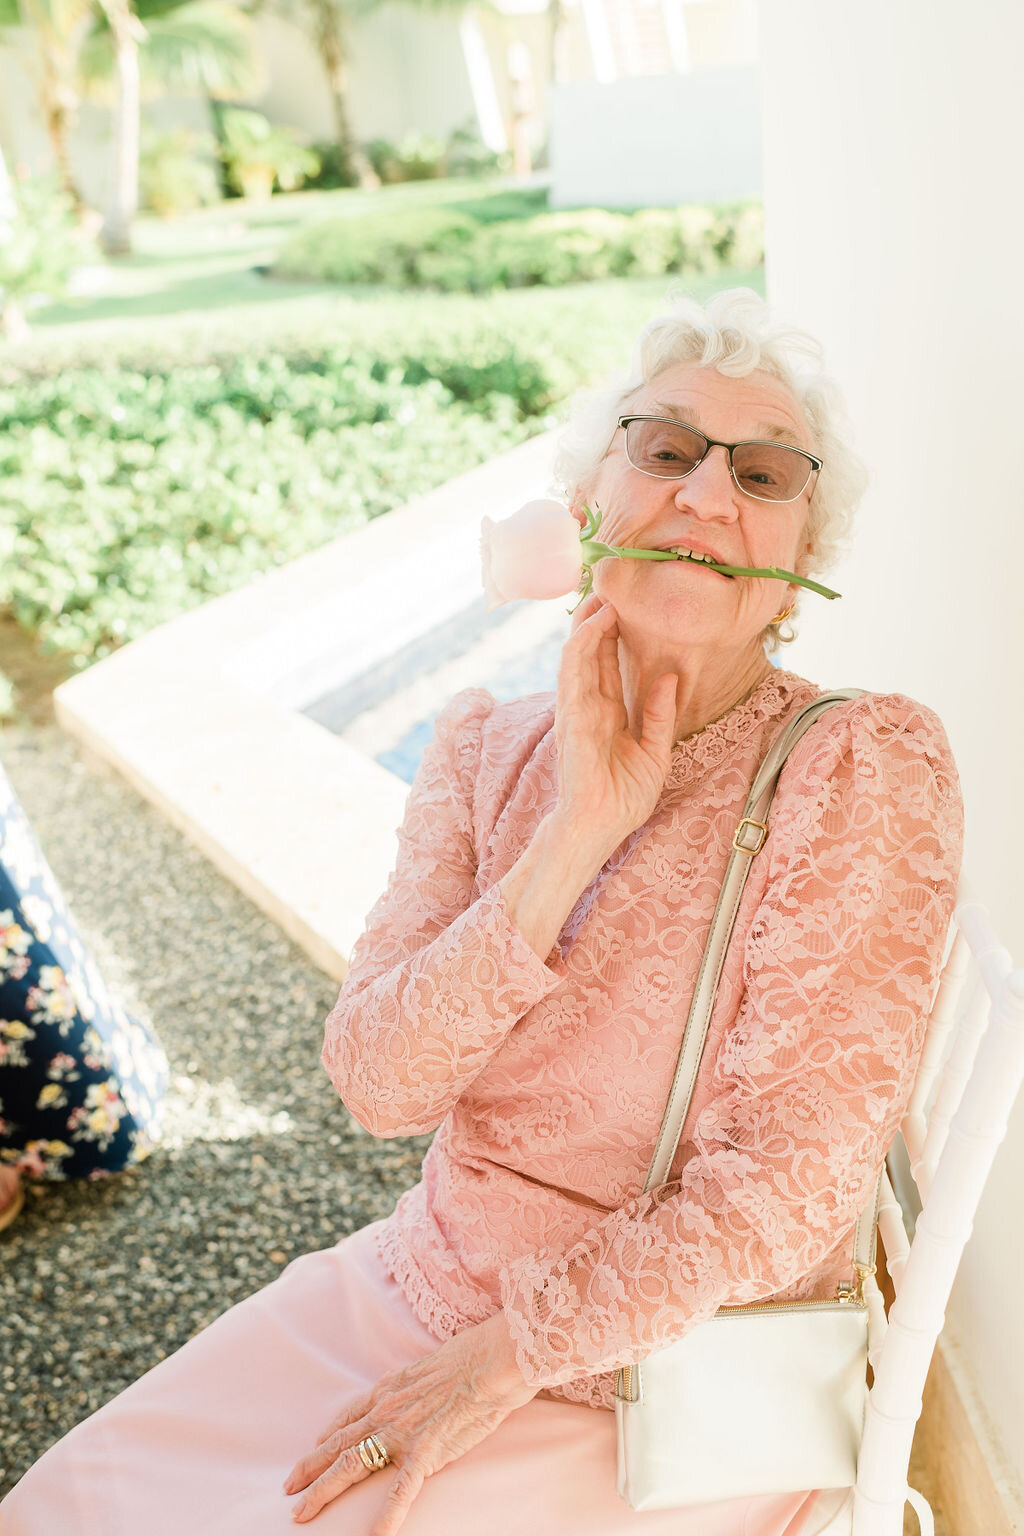 Grandma holding a rose in between her teeth